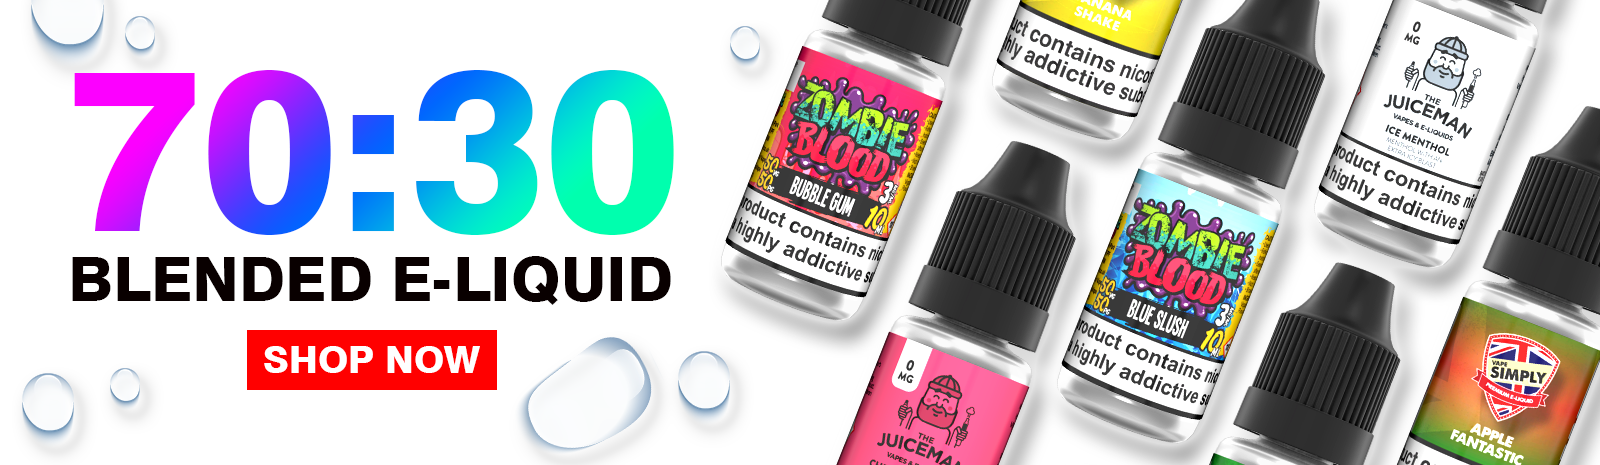 70/30 Blended E-liquids 